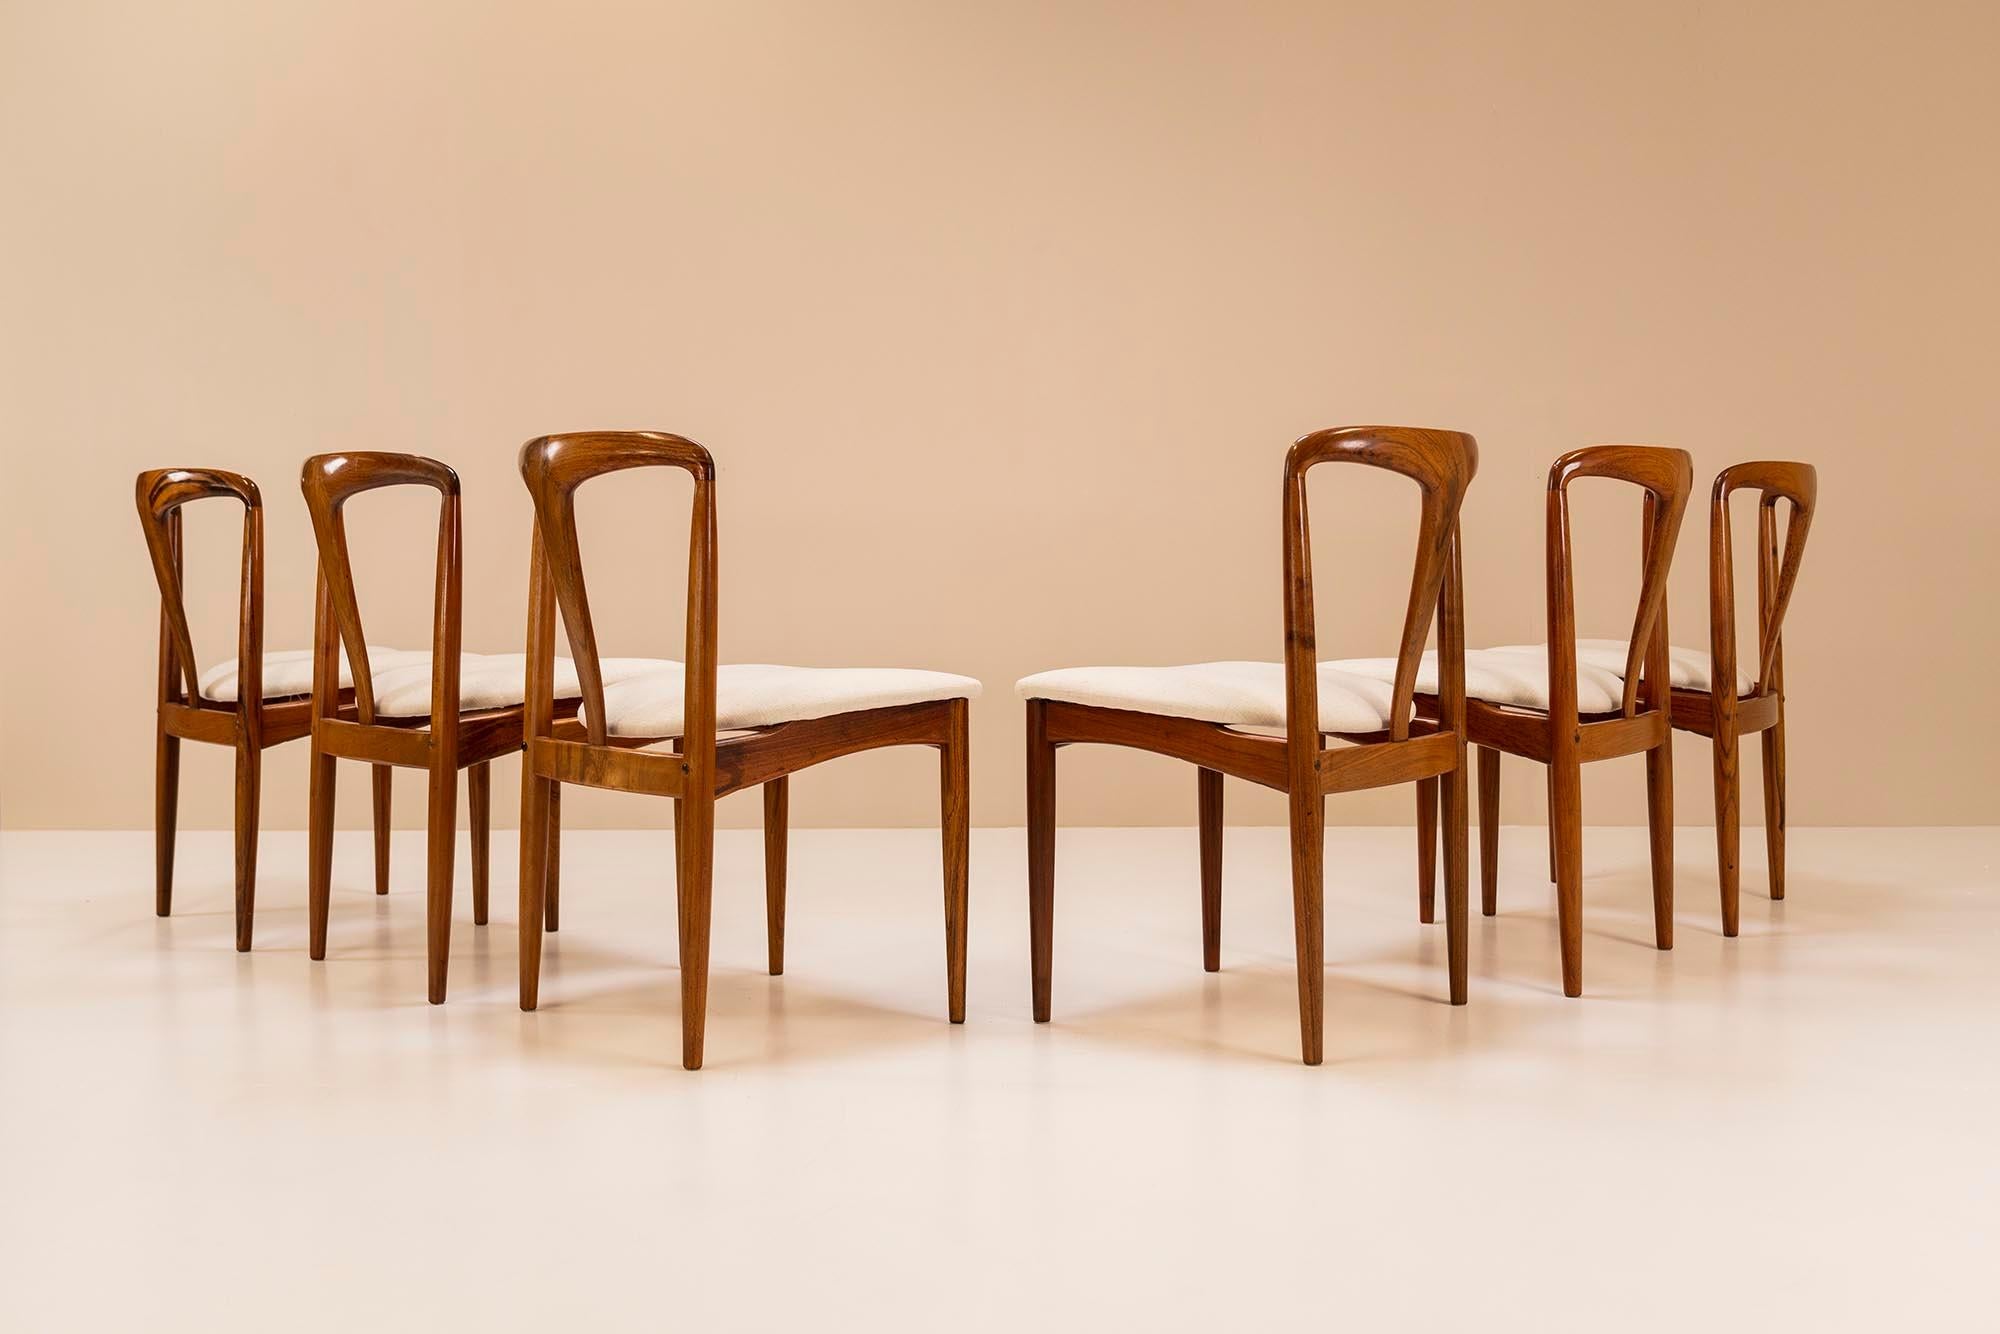 Ein sehr raffiniertes Set von sechs Juliane-Stühlen, die der dänische Designer Johannes Andersen 1965 für die Uldum Mobelfabrik entworfen hat. Hinter diesem Design verbirgt sich ein Handwerk und eine Sinnlichkeit, die sich tatsächlich auf den ersten